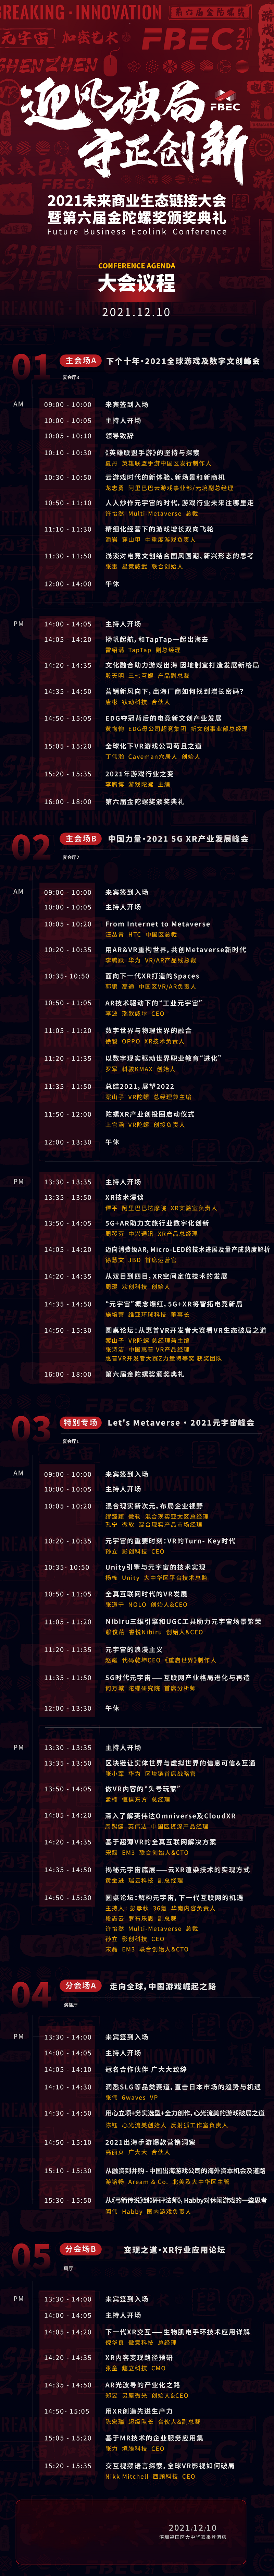 FBEC2021丨大会议程正式公布！12月10日年度行业盛会聚锦鹏城！